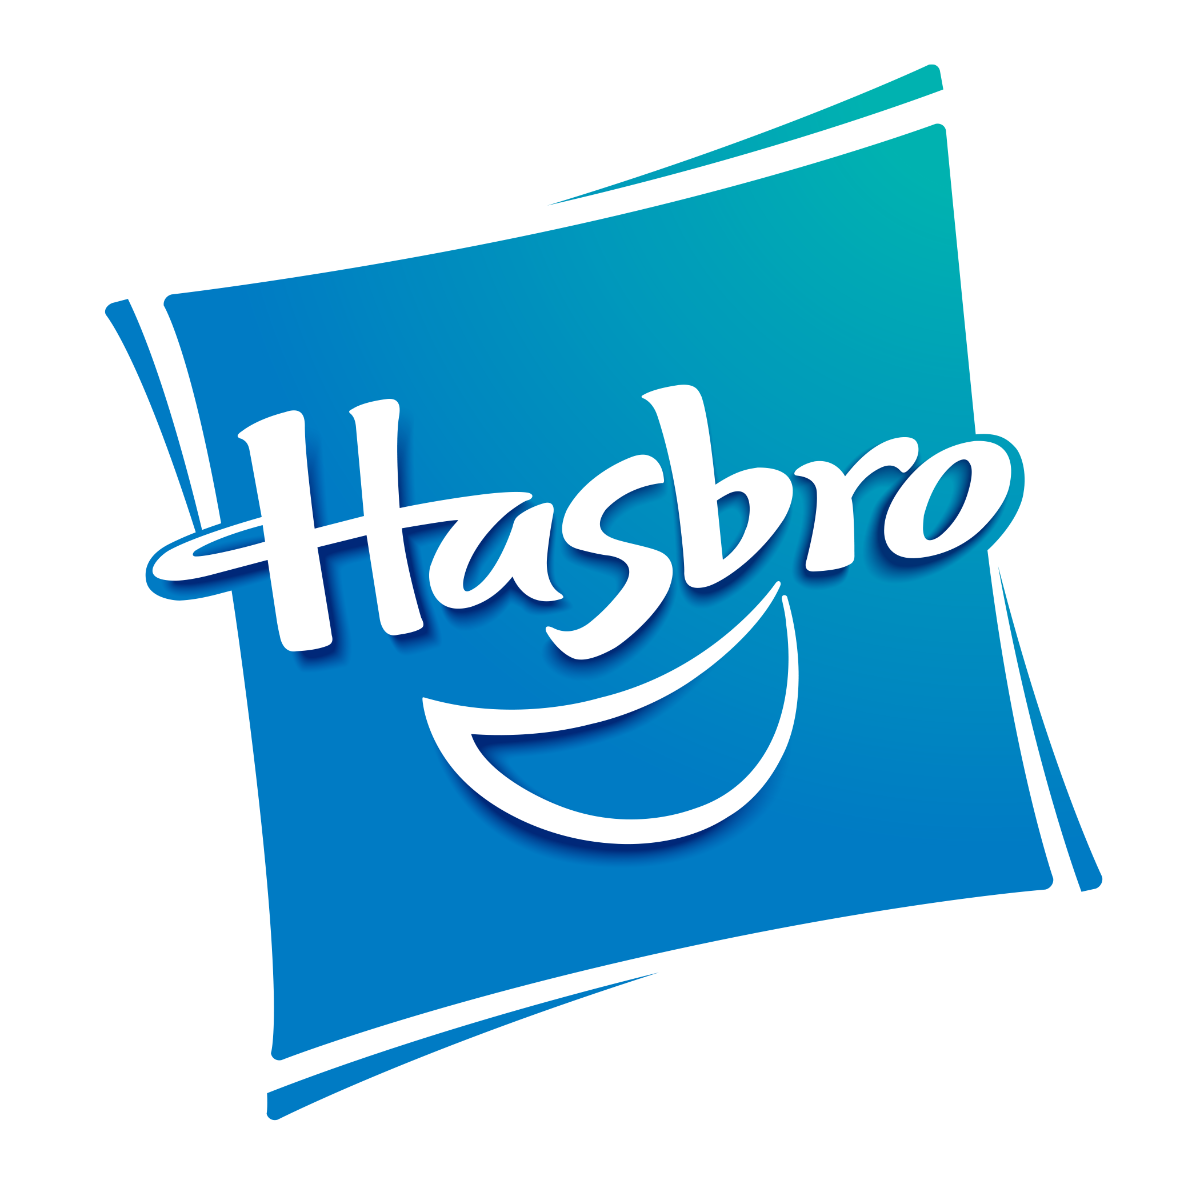 Hasbro_4c_no_R_1